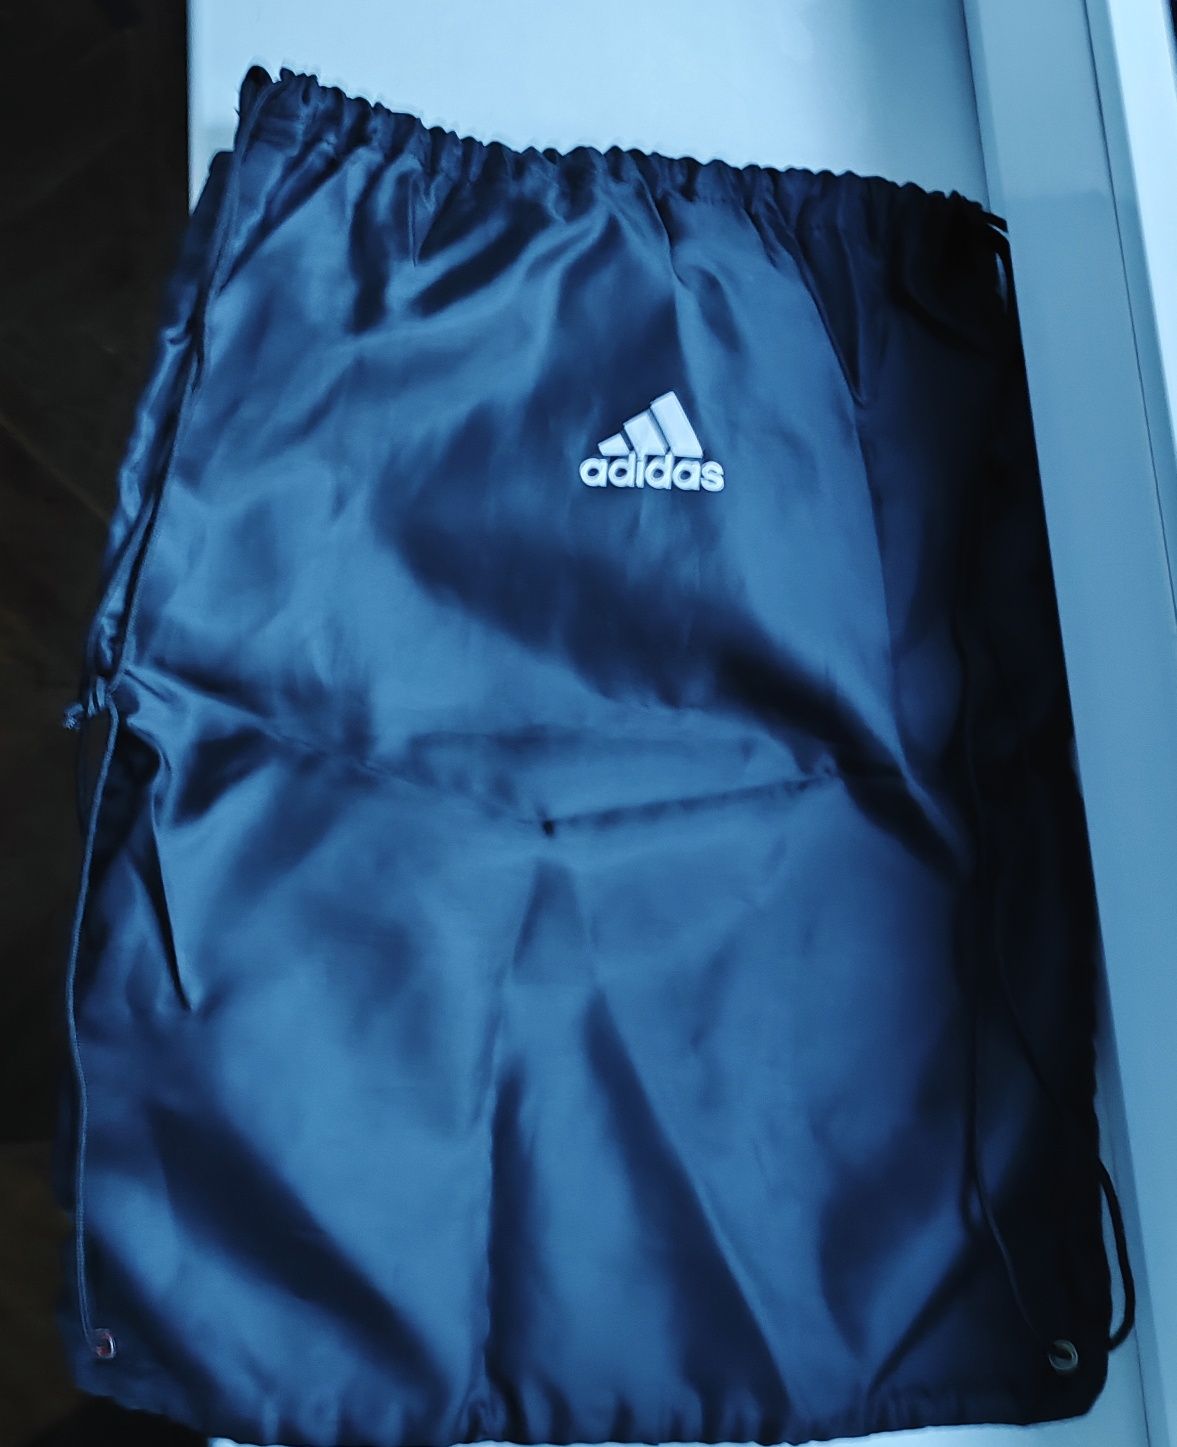 Спортивний рюкзак-мішок для взуття:
"EURO-2012"